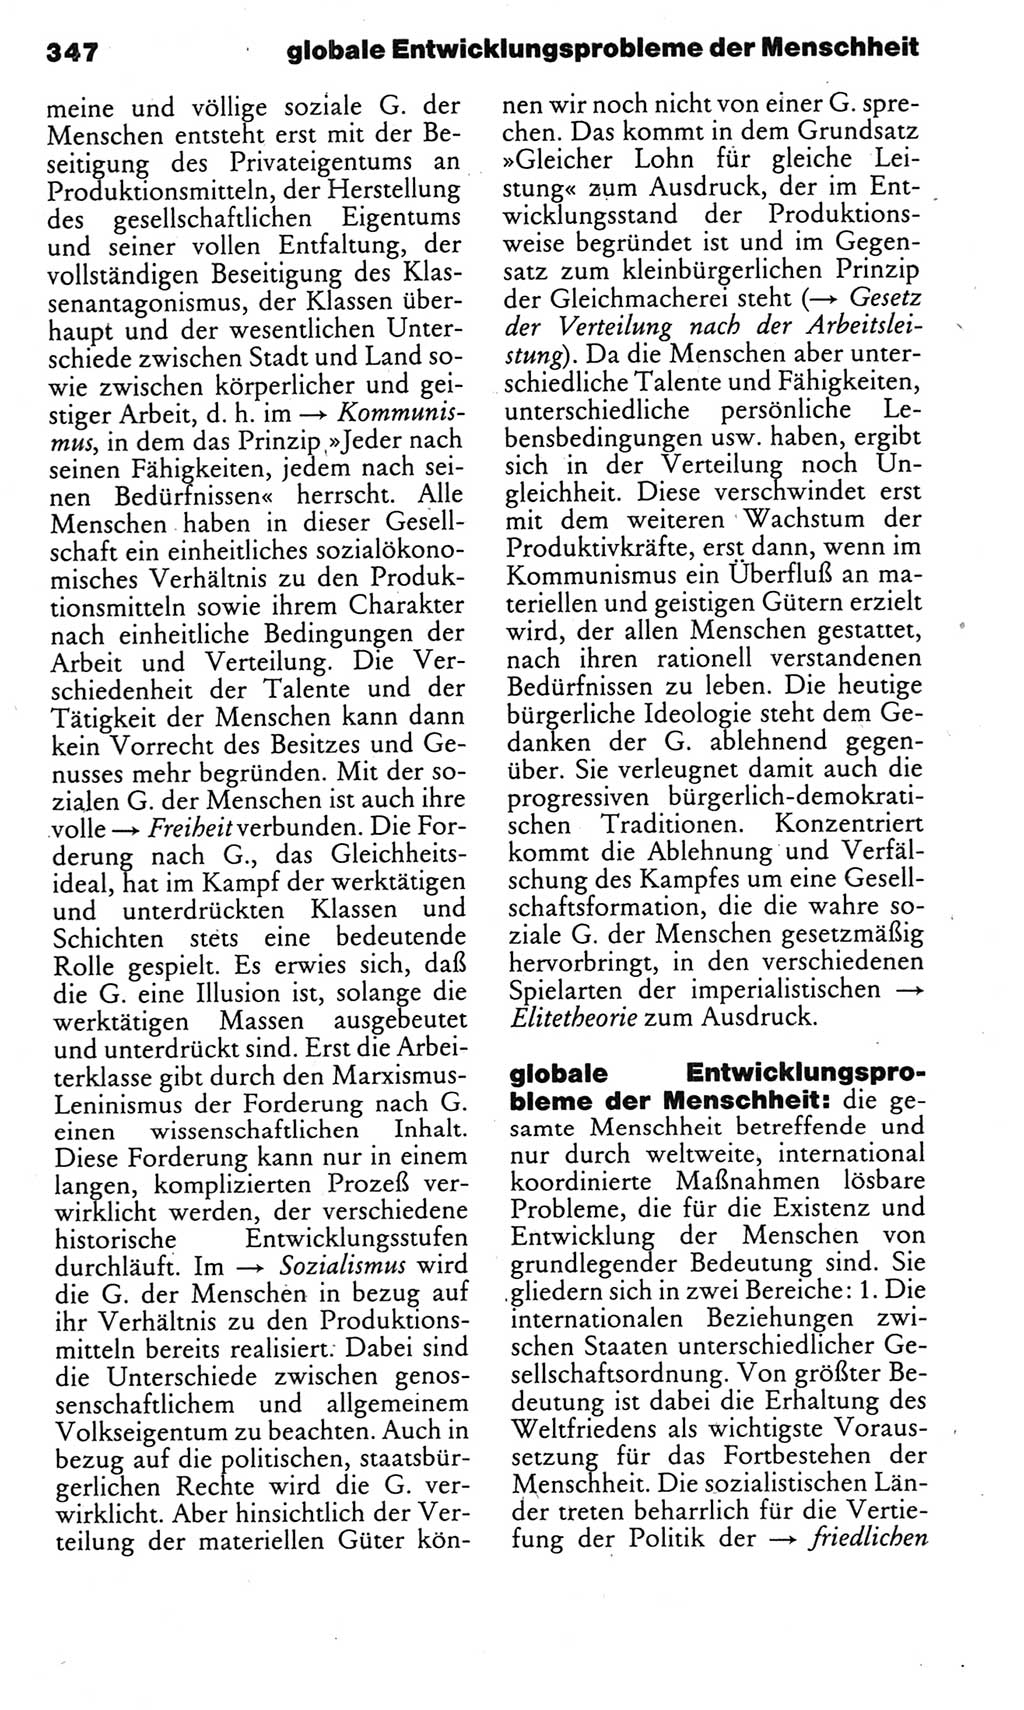 Kleines politisches Wörterbuch [Deutsche Demokratische Republik (DDR)] 1985, Seite 347 (Kl. pol. Wb. DDR 1985, S. 347)